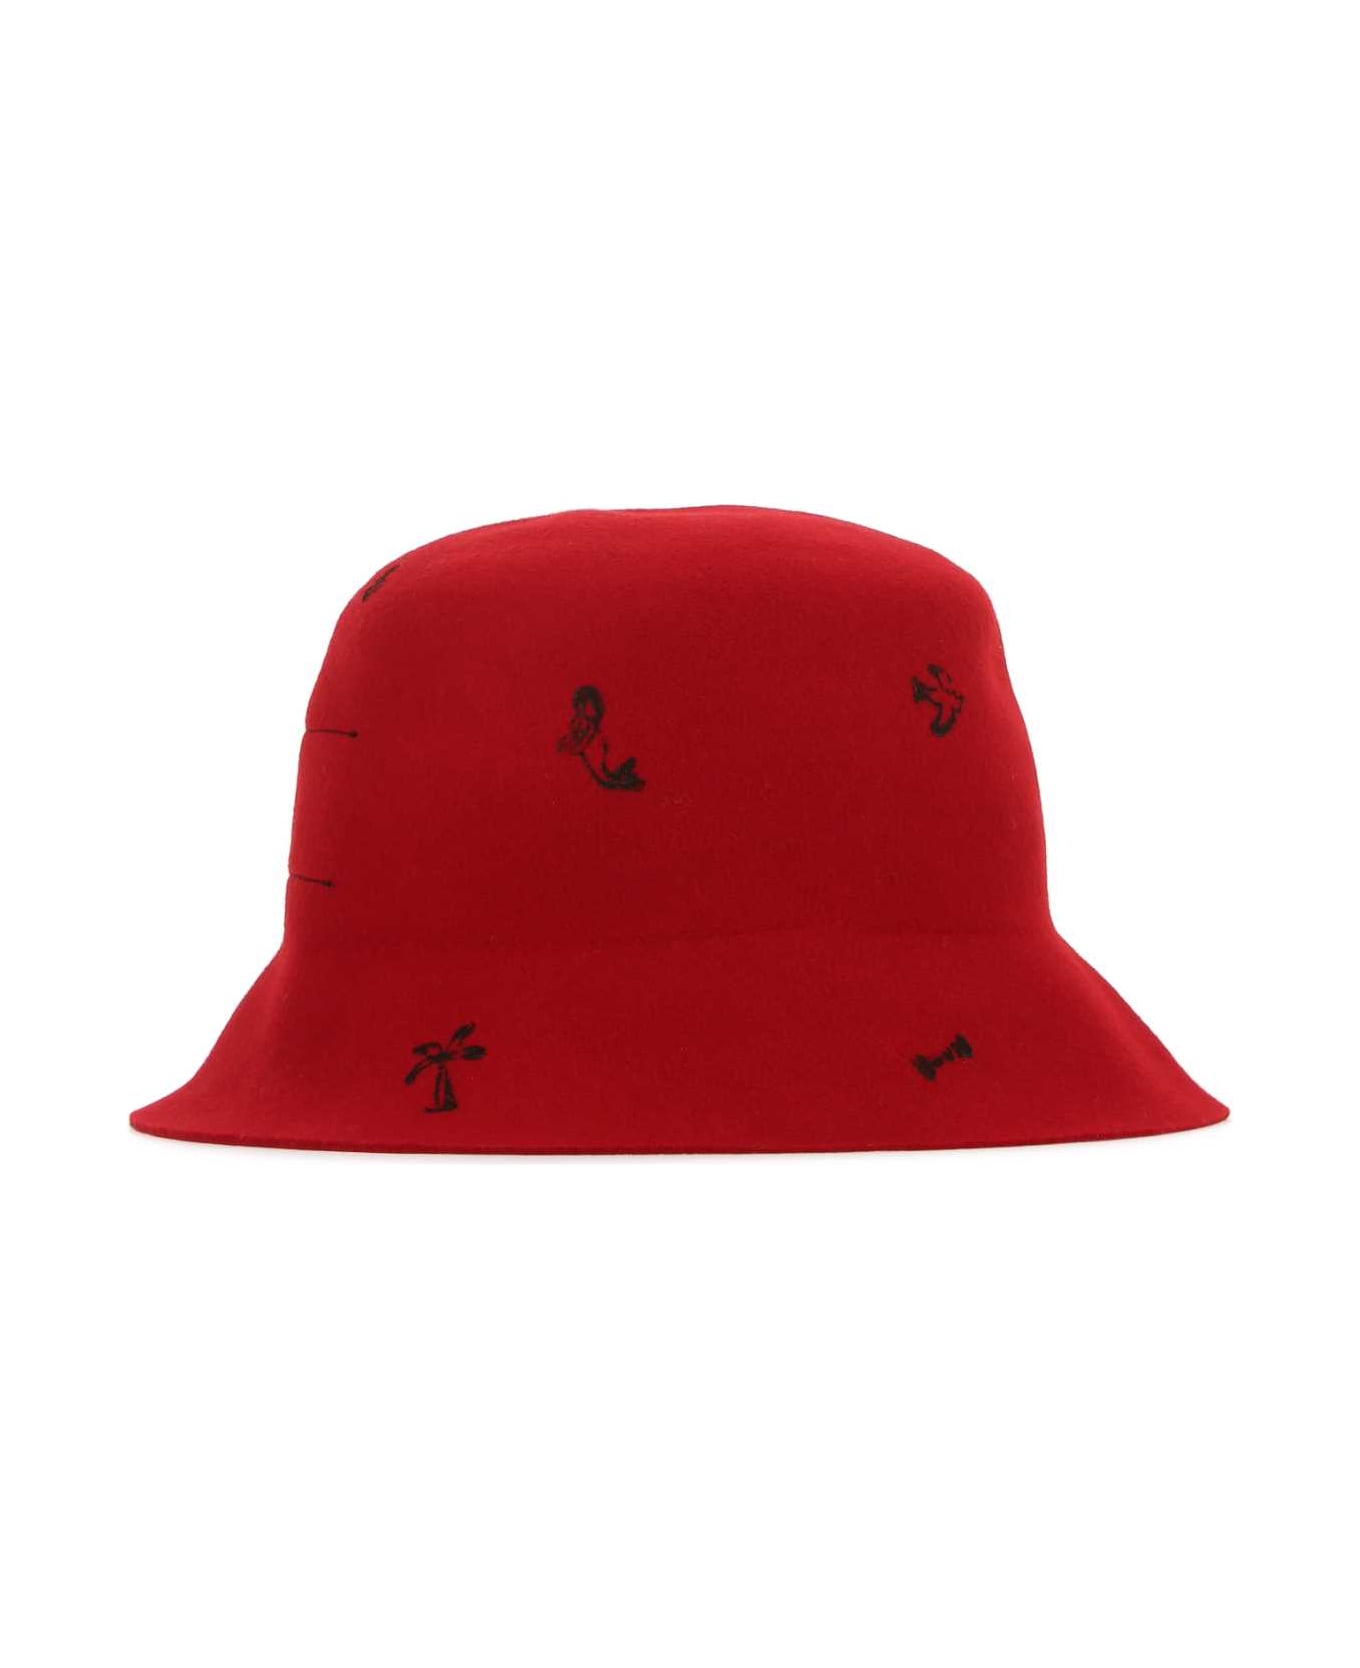 Super Duper Hats Red Felt Freya Bucket Hat - IBISCO